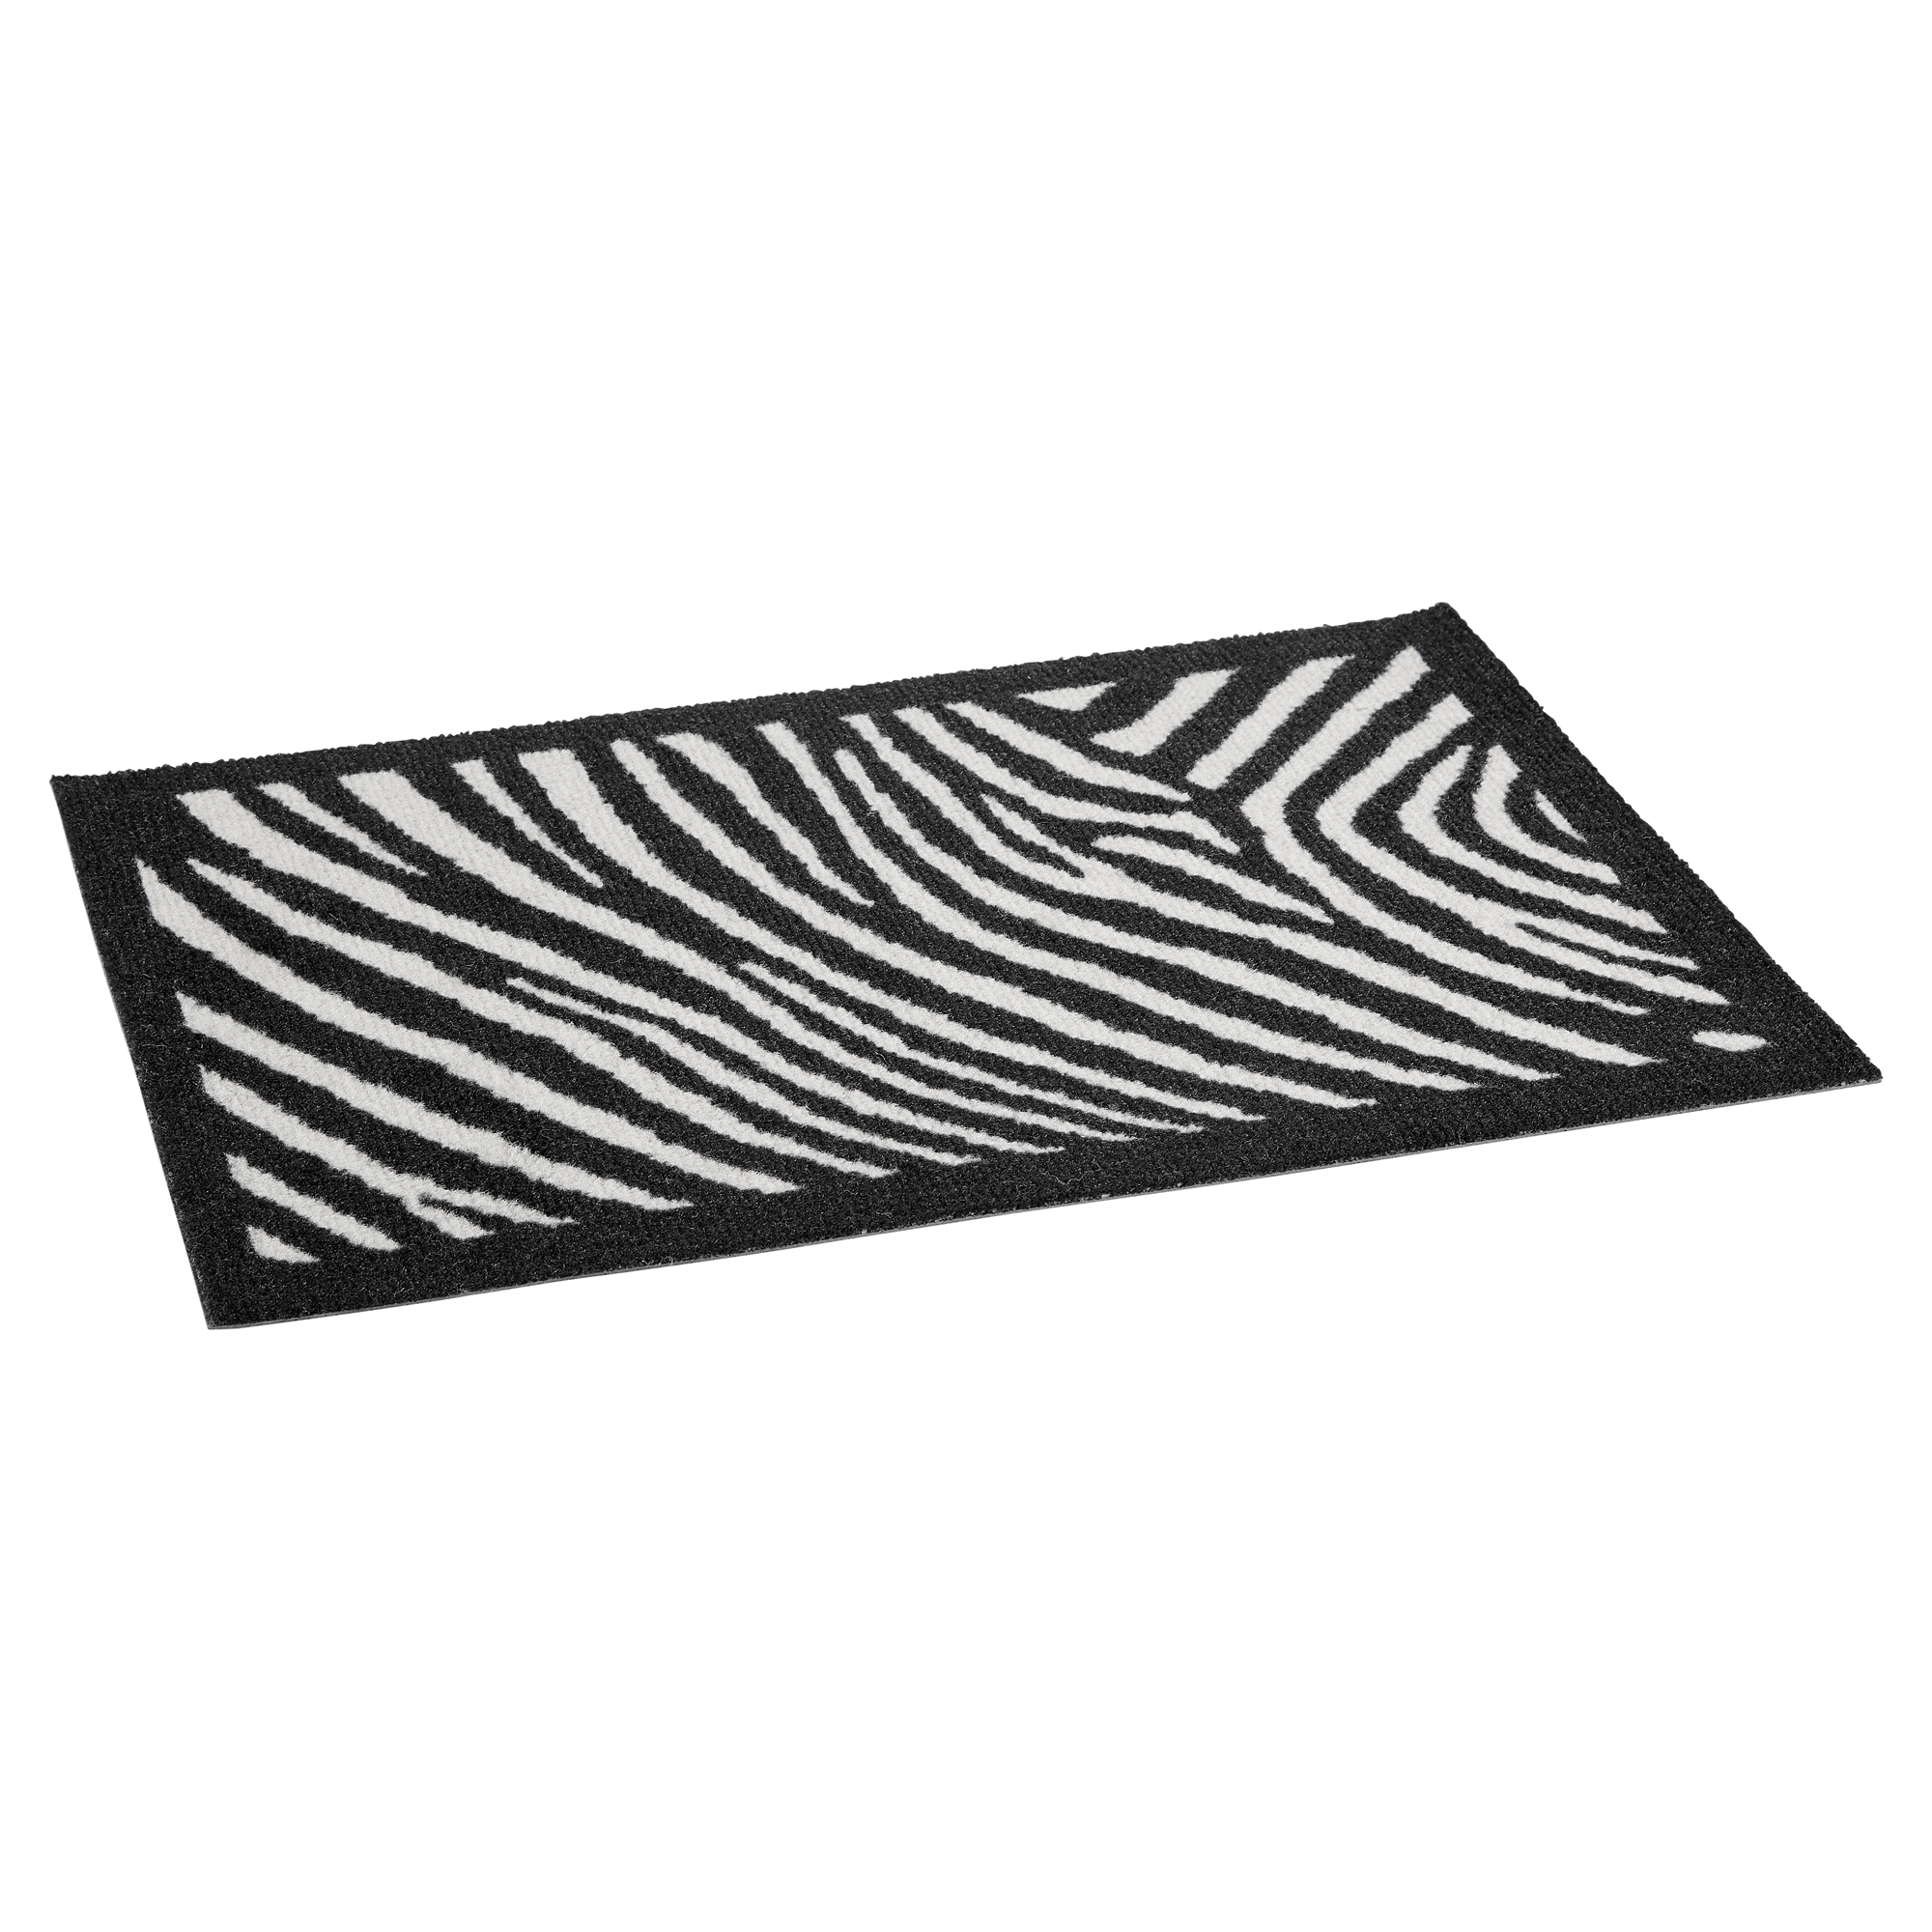 Fußmatte Polyamid Zebra schwarz/weiß 58 x 39 cm + product picture